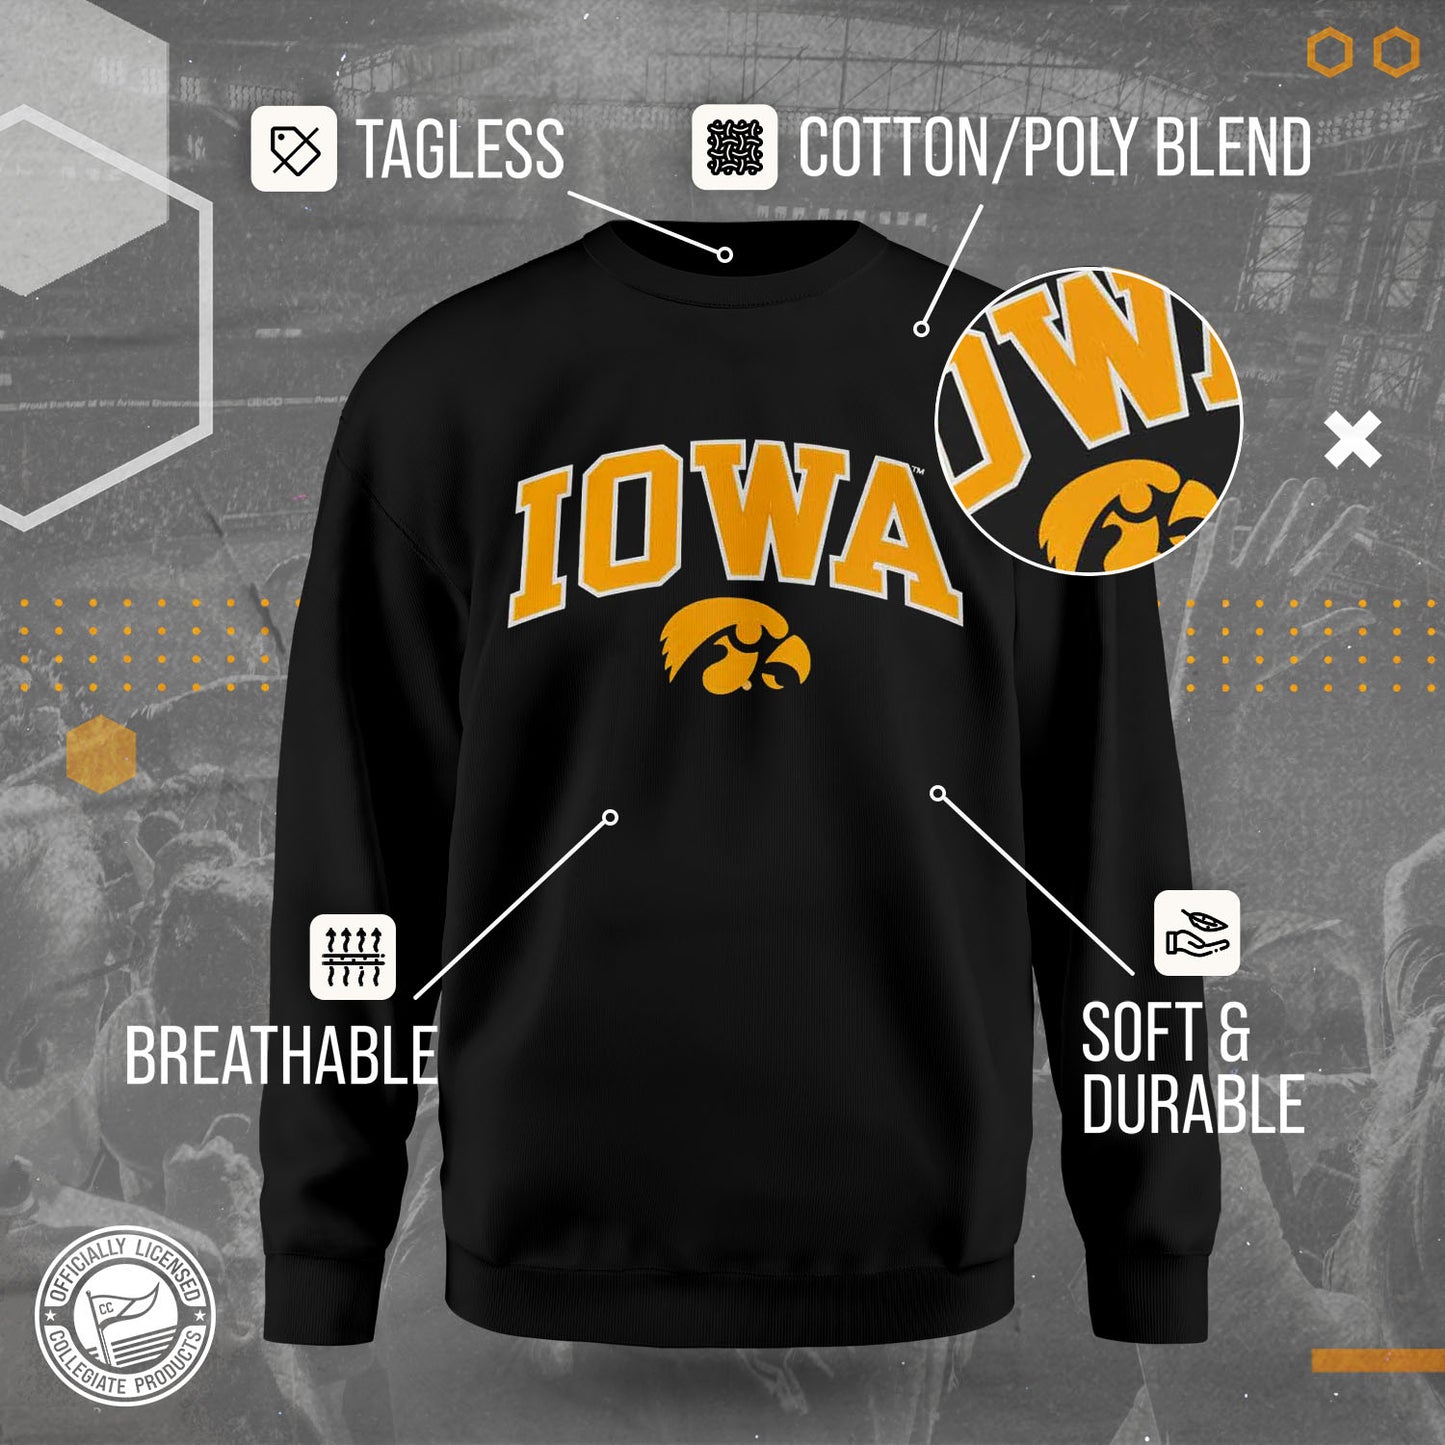 Iowa Hawkeyes NCAA Adult Tackle Twill Crewneck Sweatshirt - Black